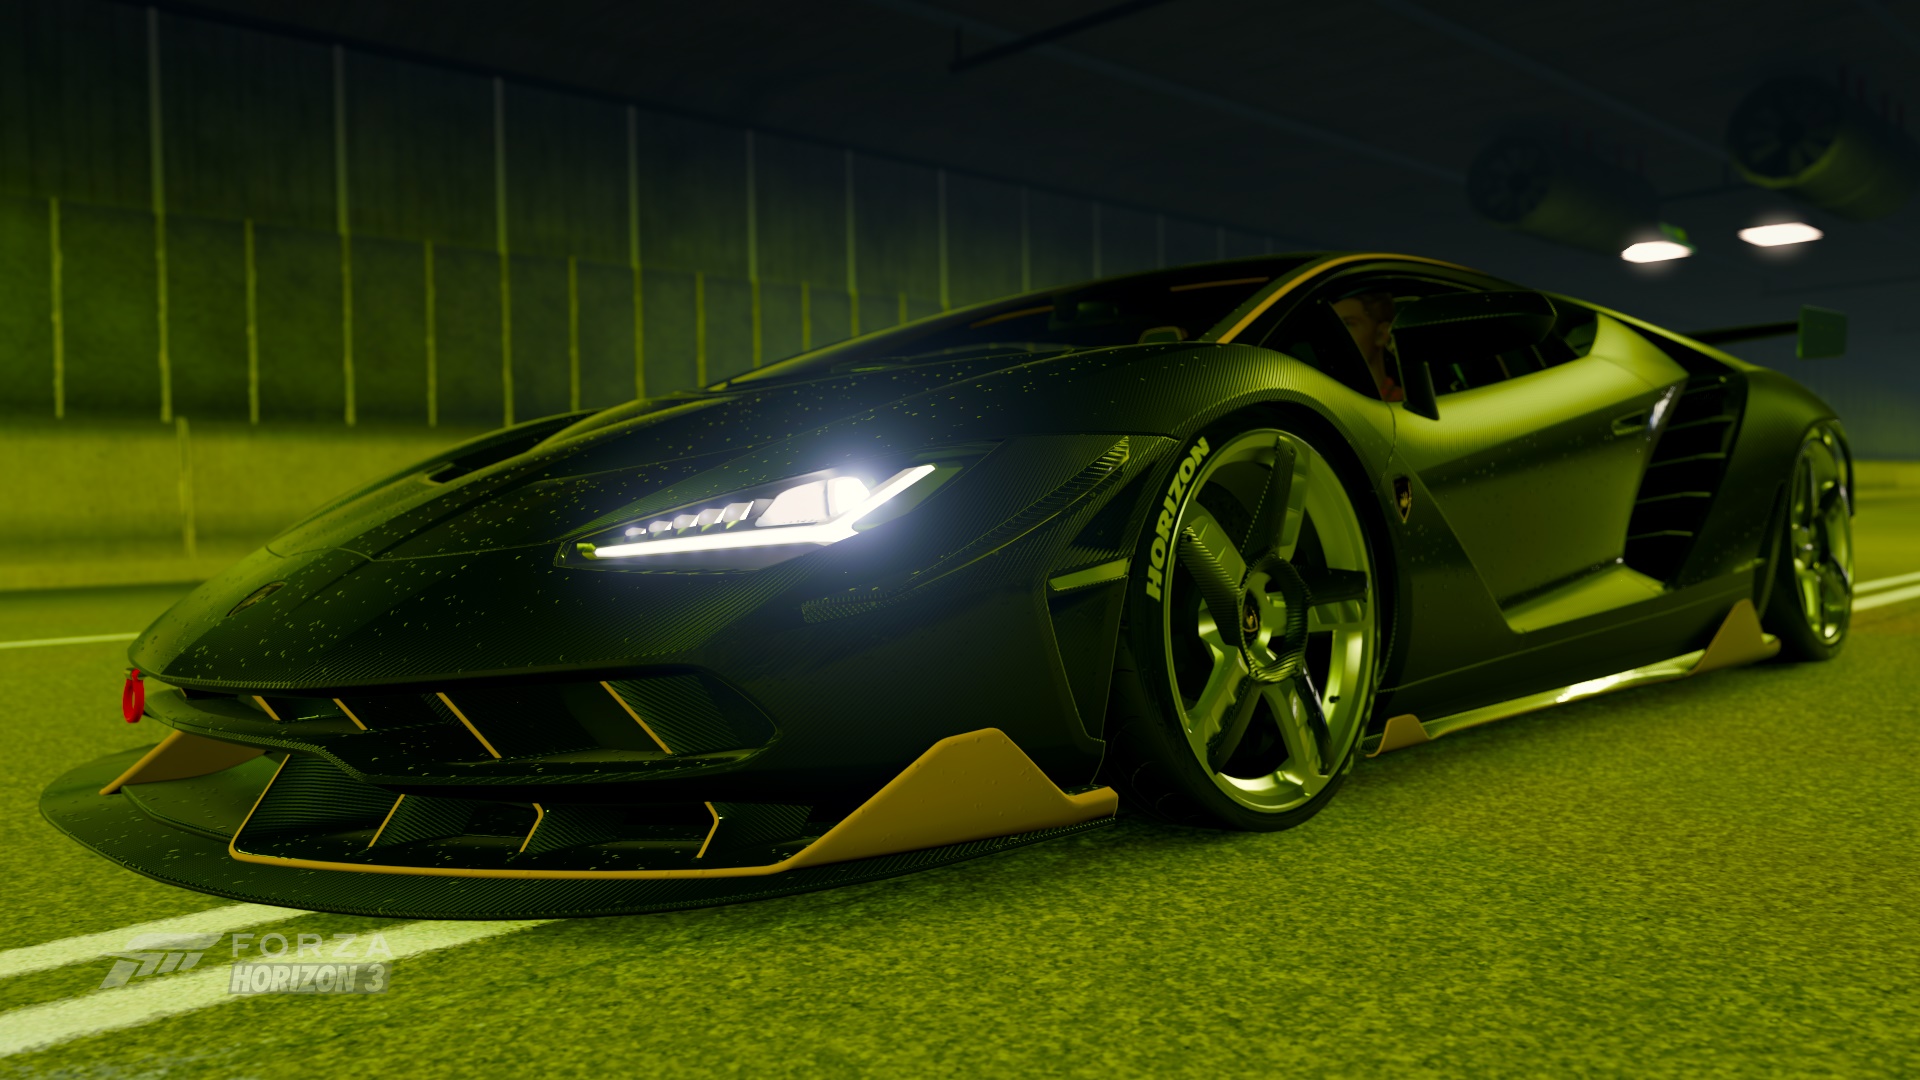 Free download wallpaper Lamborghini, Car, Lamborghini Centenario, Video Game, Forza Horizon 3, Forza on your PC desktop